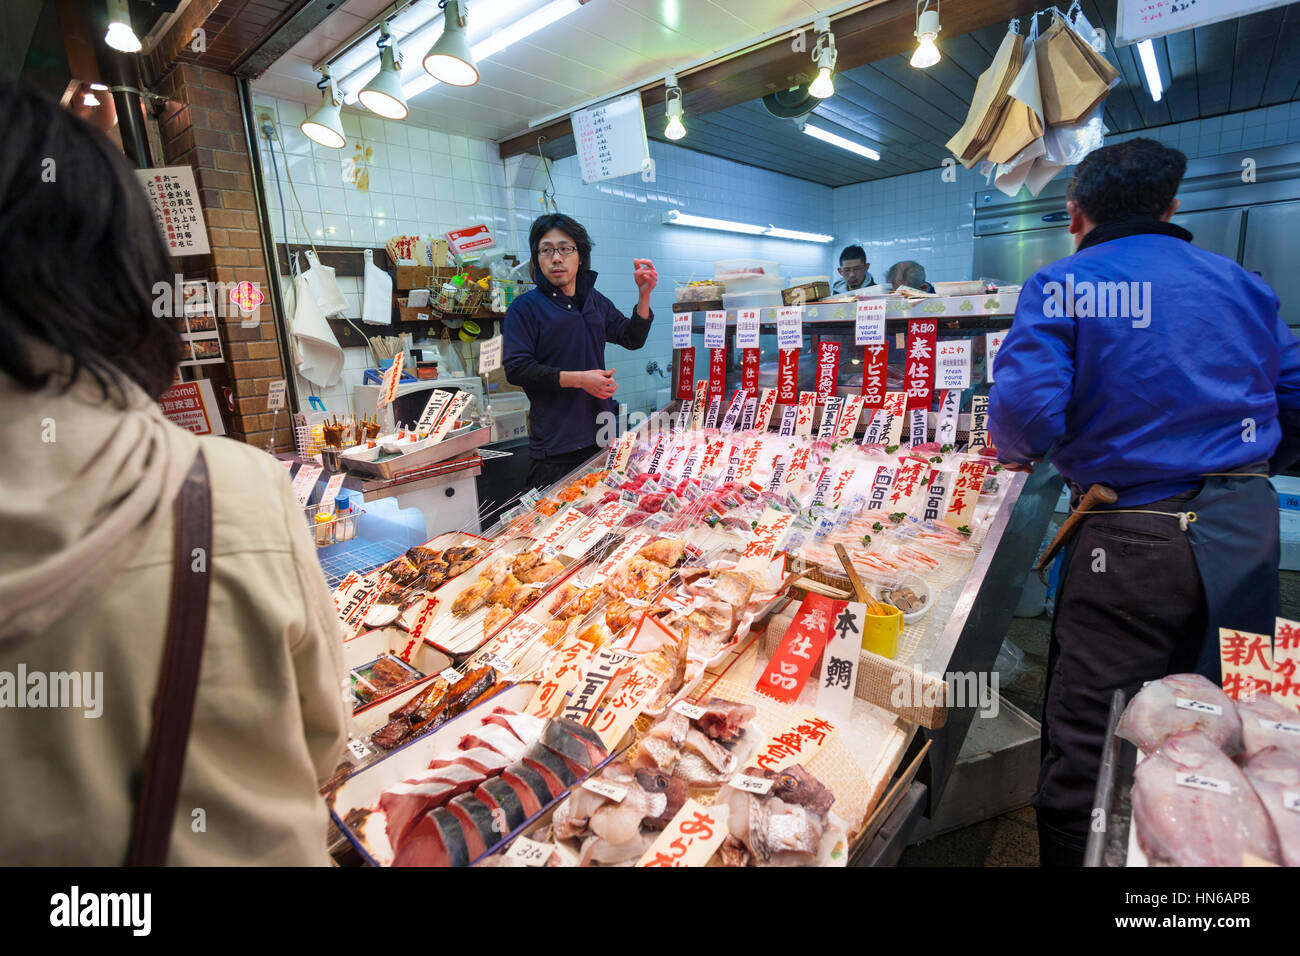 KYOTO, Giappone - 23 Marzo: il personale e i clienti in una fase di stallo la vendita del pesce in Nishiki mercato alimentare nel centro di Kyoto il 23 marzo 2012. Foto Stock